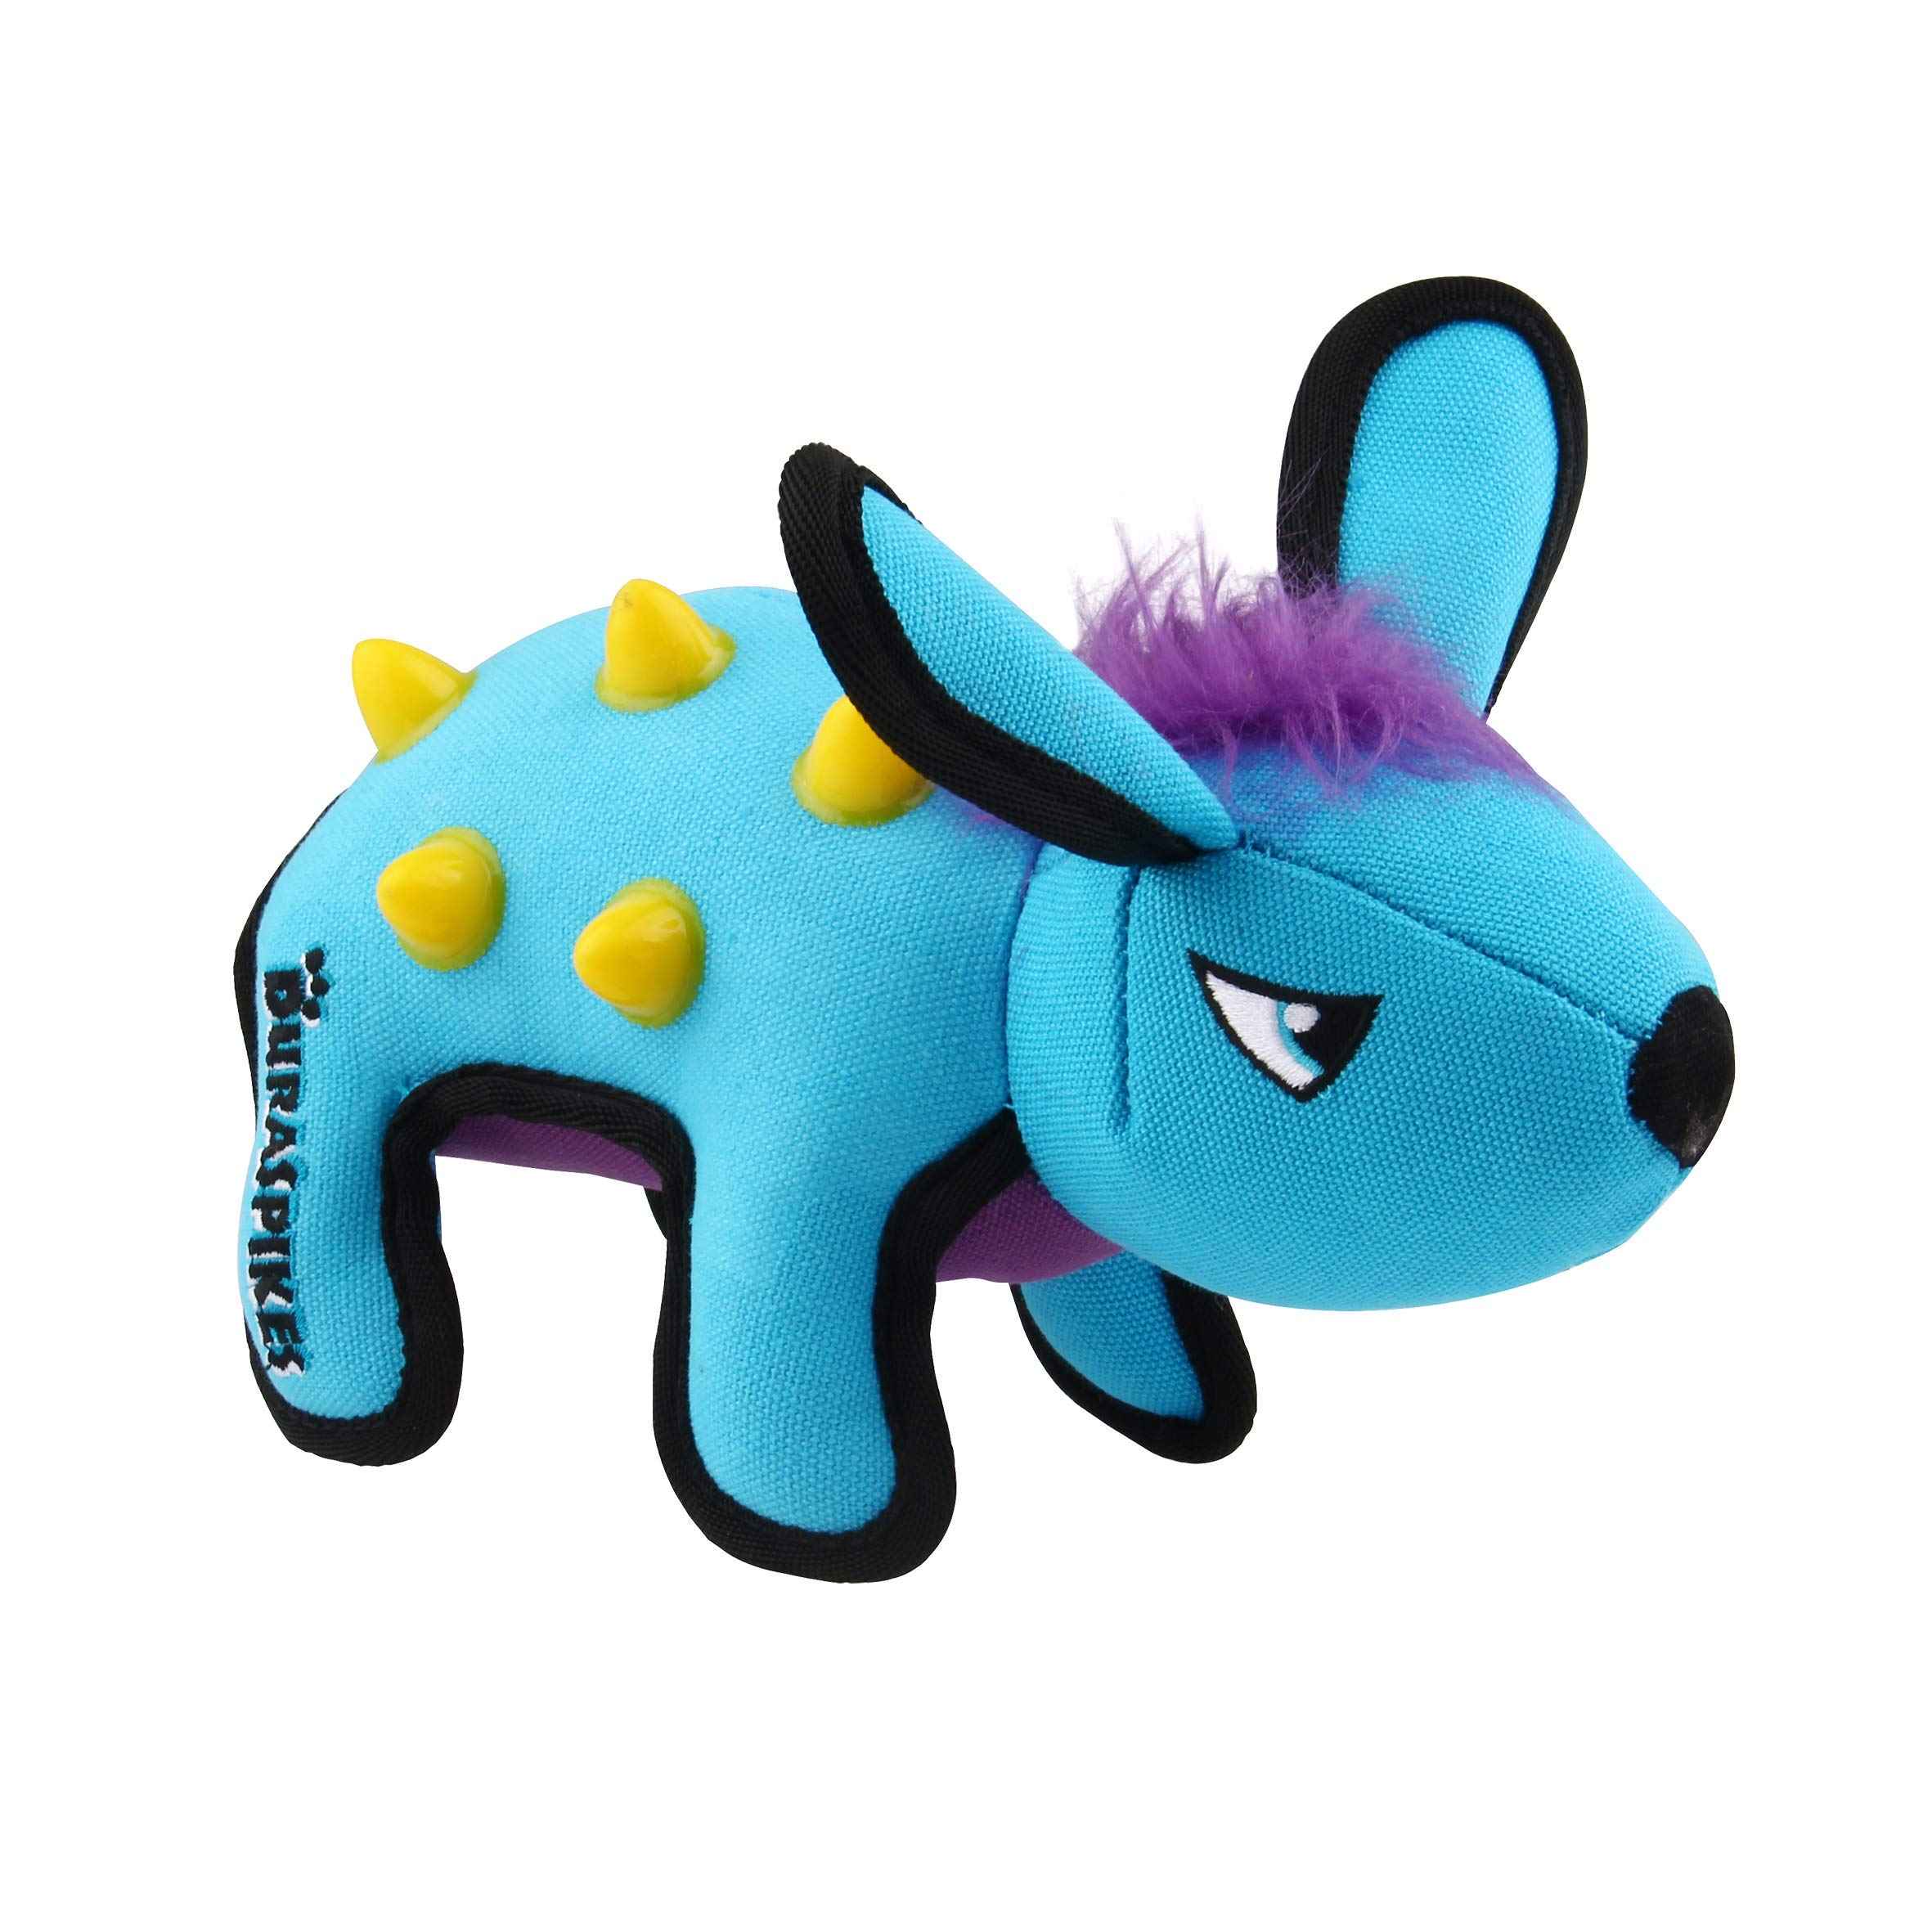 GiGwi duraspikes extra odolná hračka králik svetlo modrý